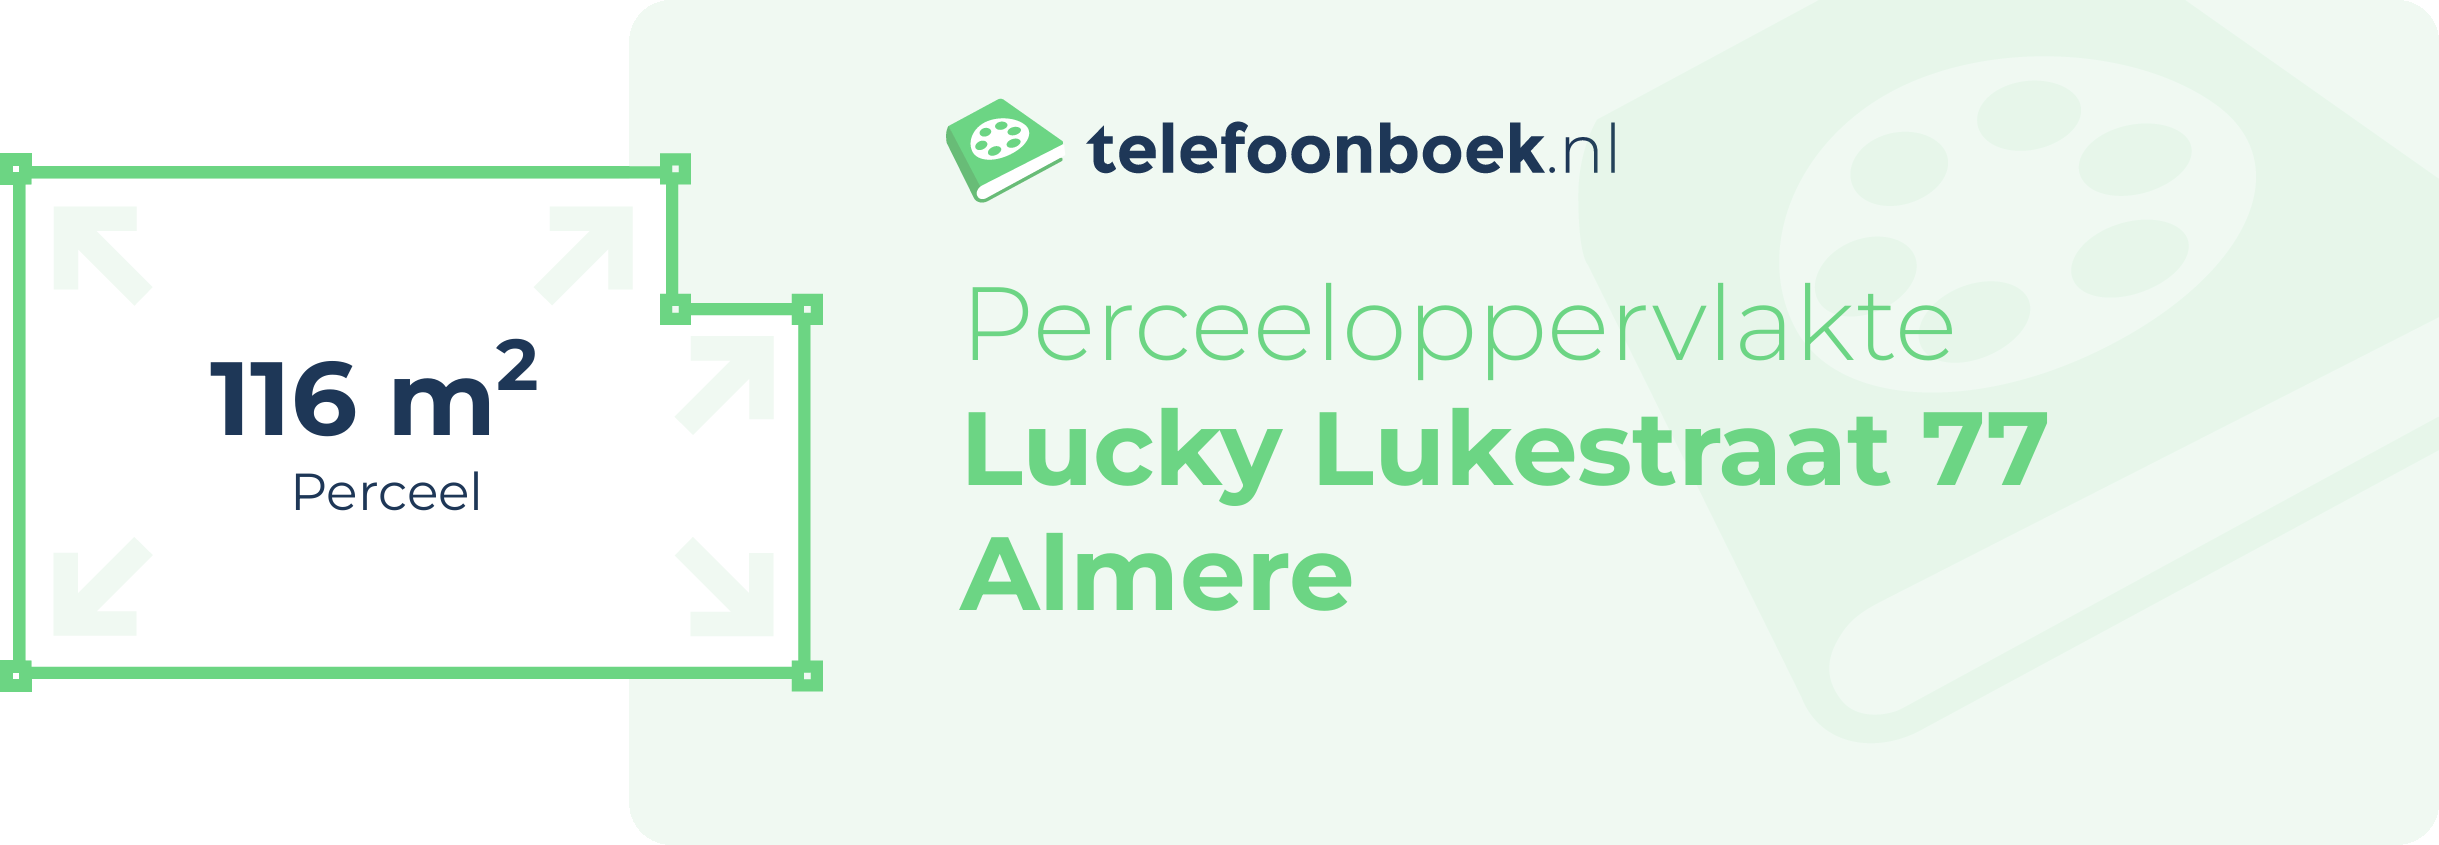 Perceeloppervlakte Lucky Lukestraat 77 Almere